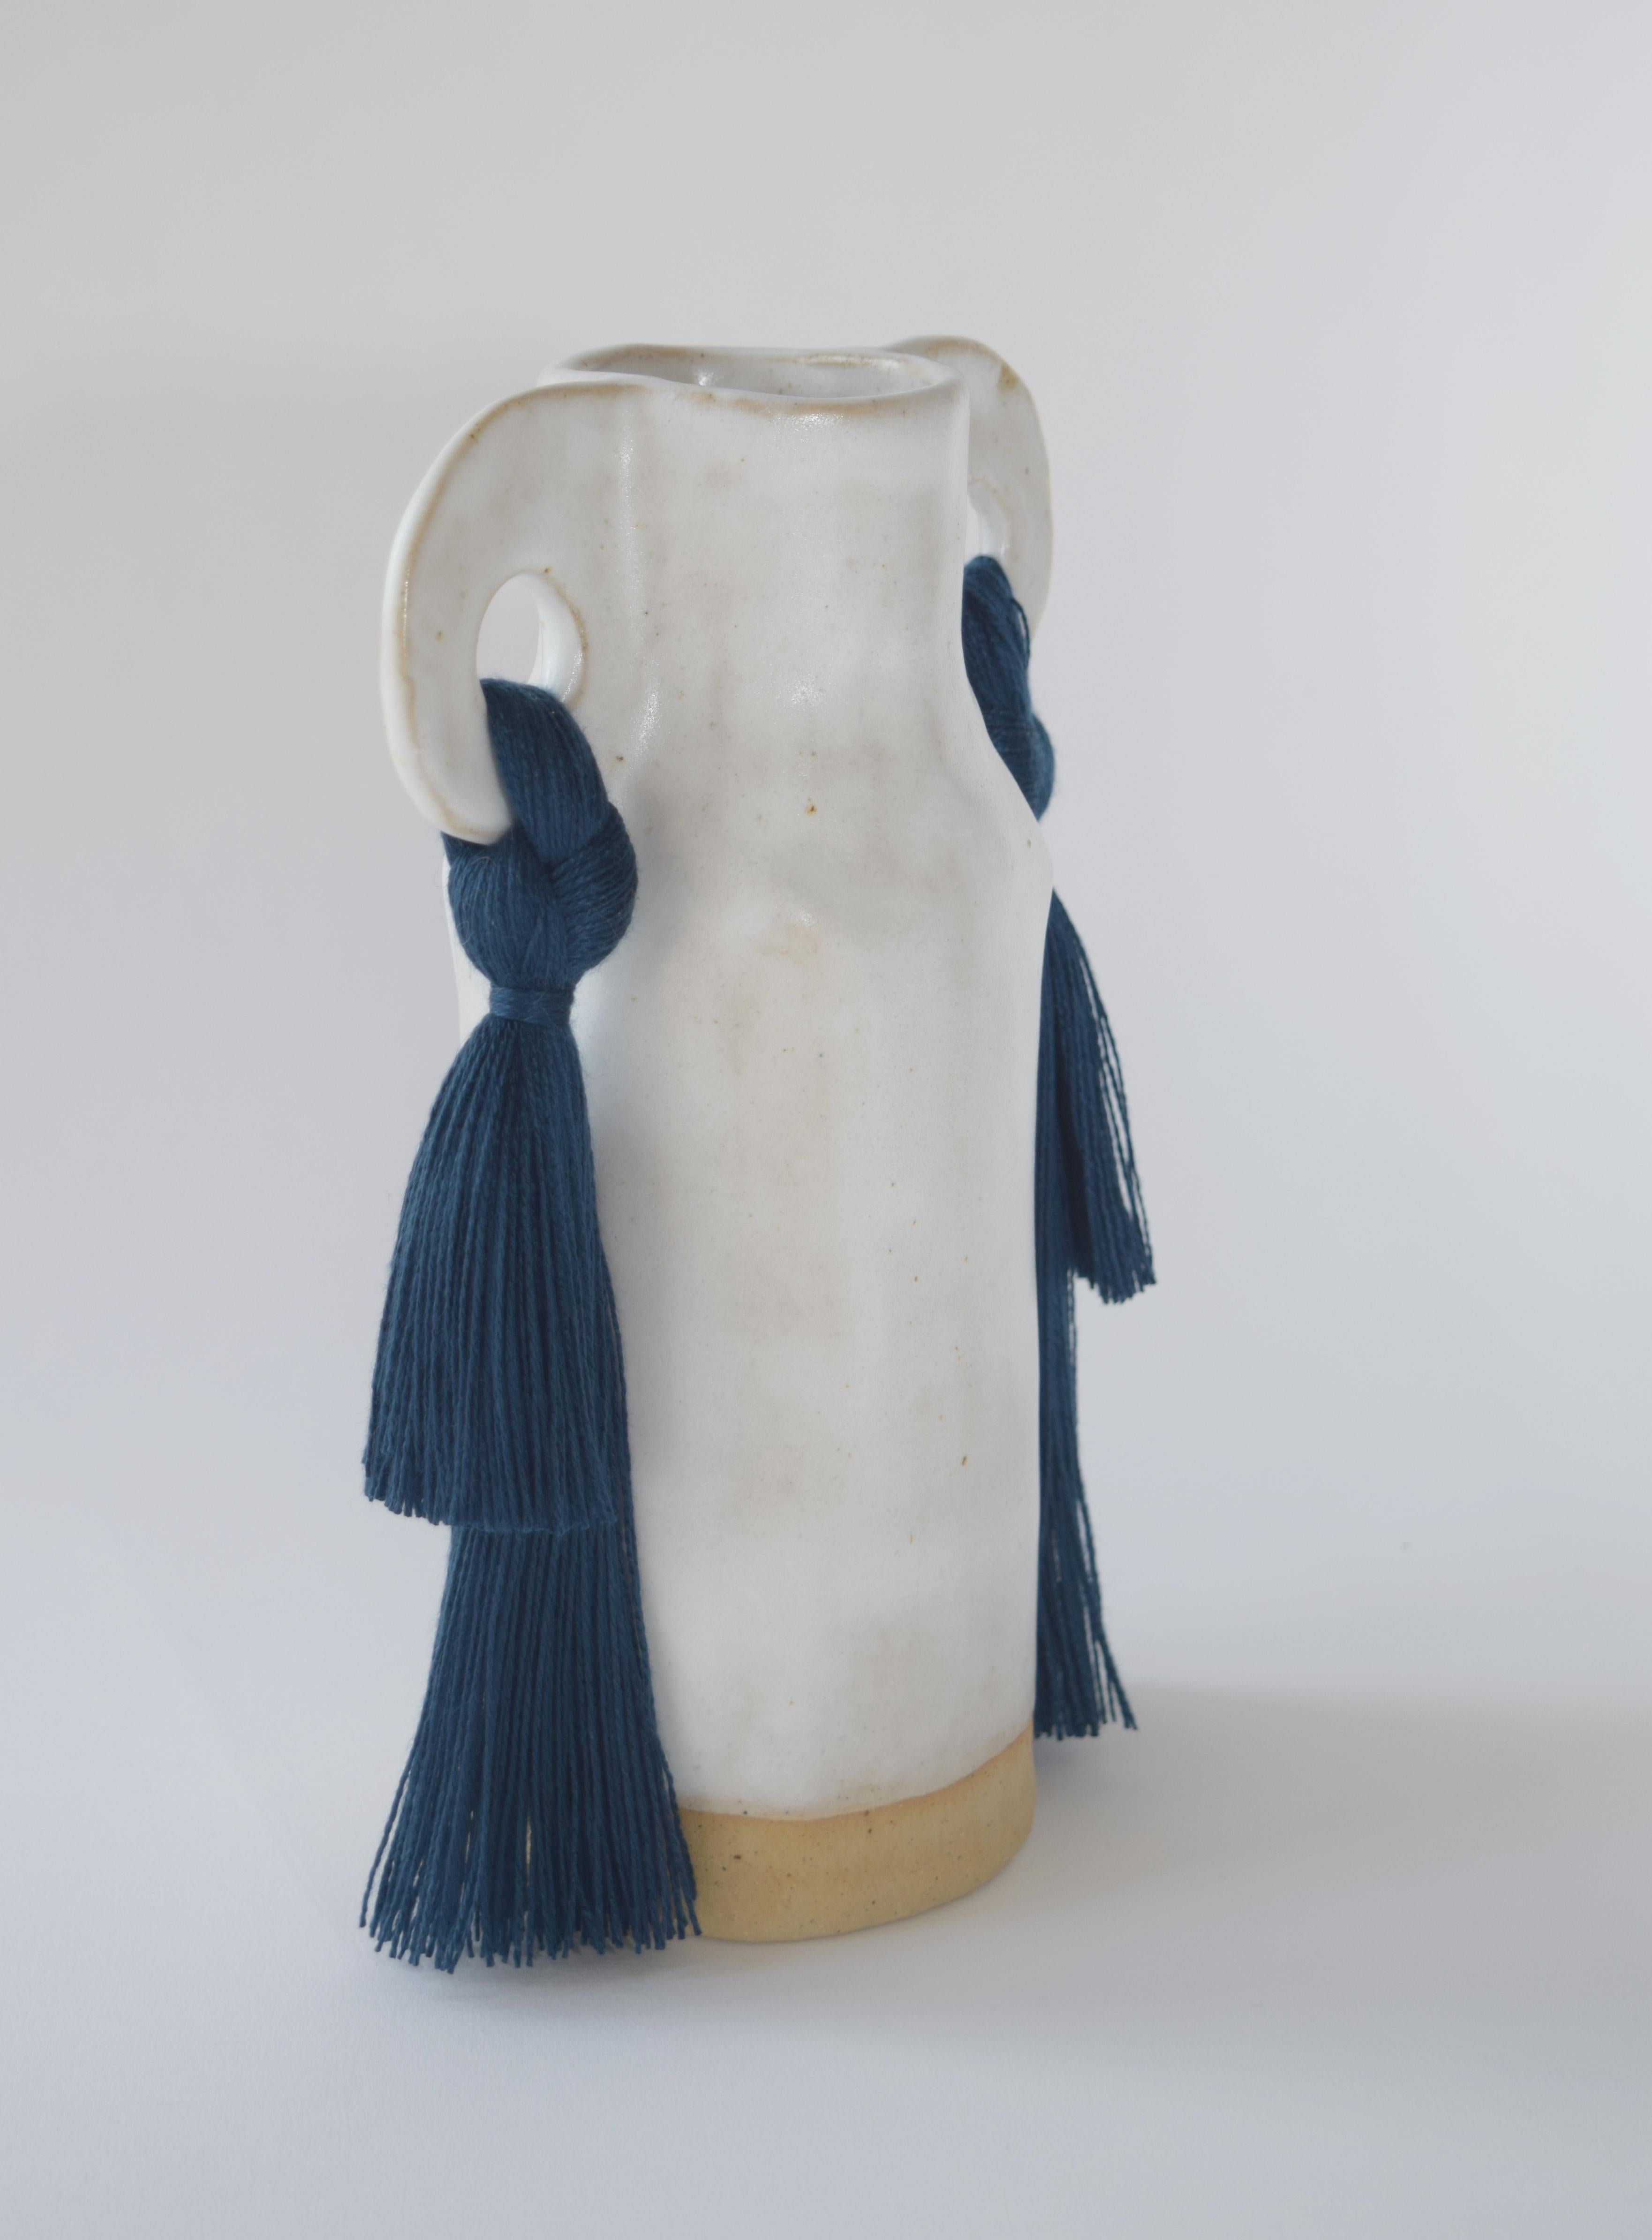 Organic Modern Handmade Ceramic Vase #606 in White Glaze with Navy Tencel Fringe Details For Sale